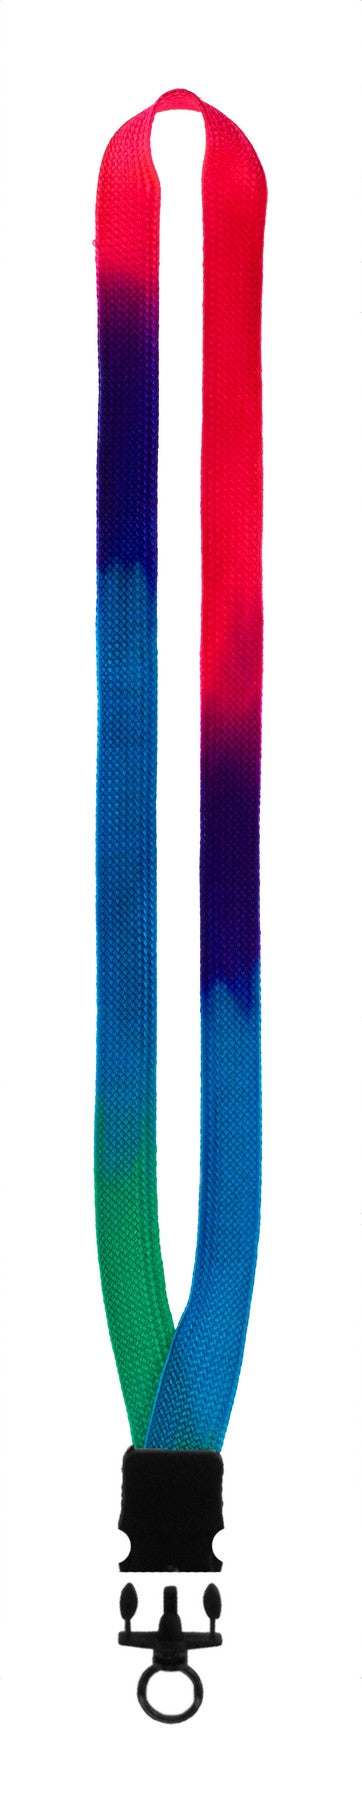 ¬æ" Tie Dye Lanyard w/Plastic Snap Buckle Release & O-Ring